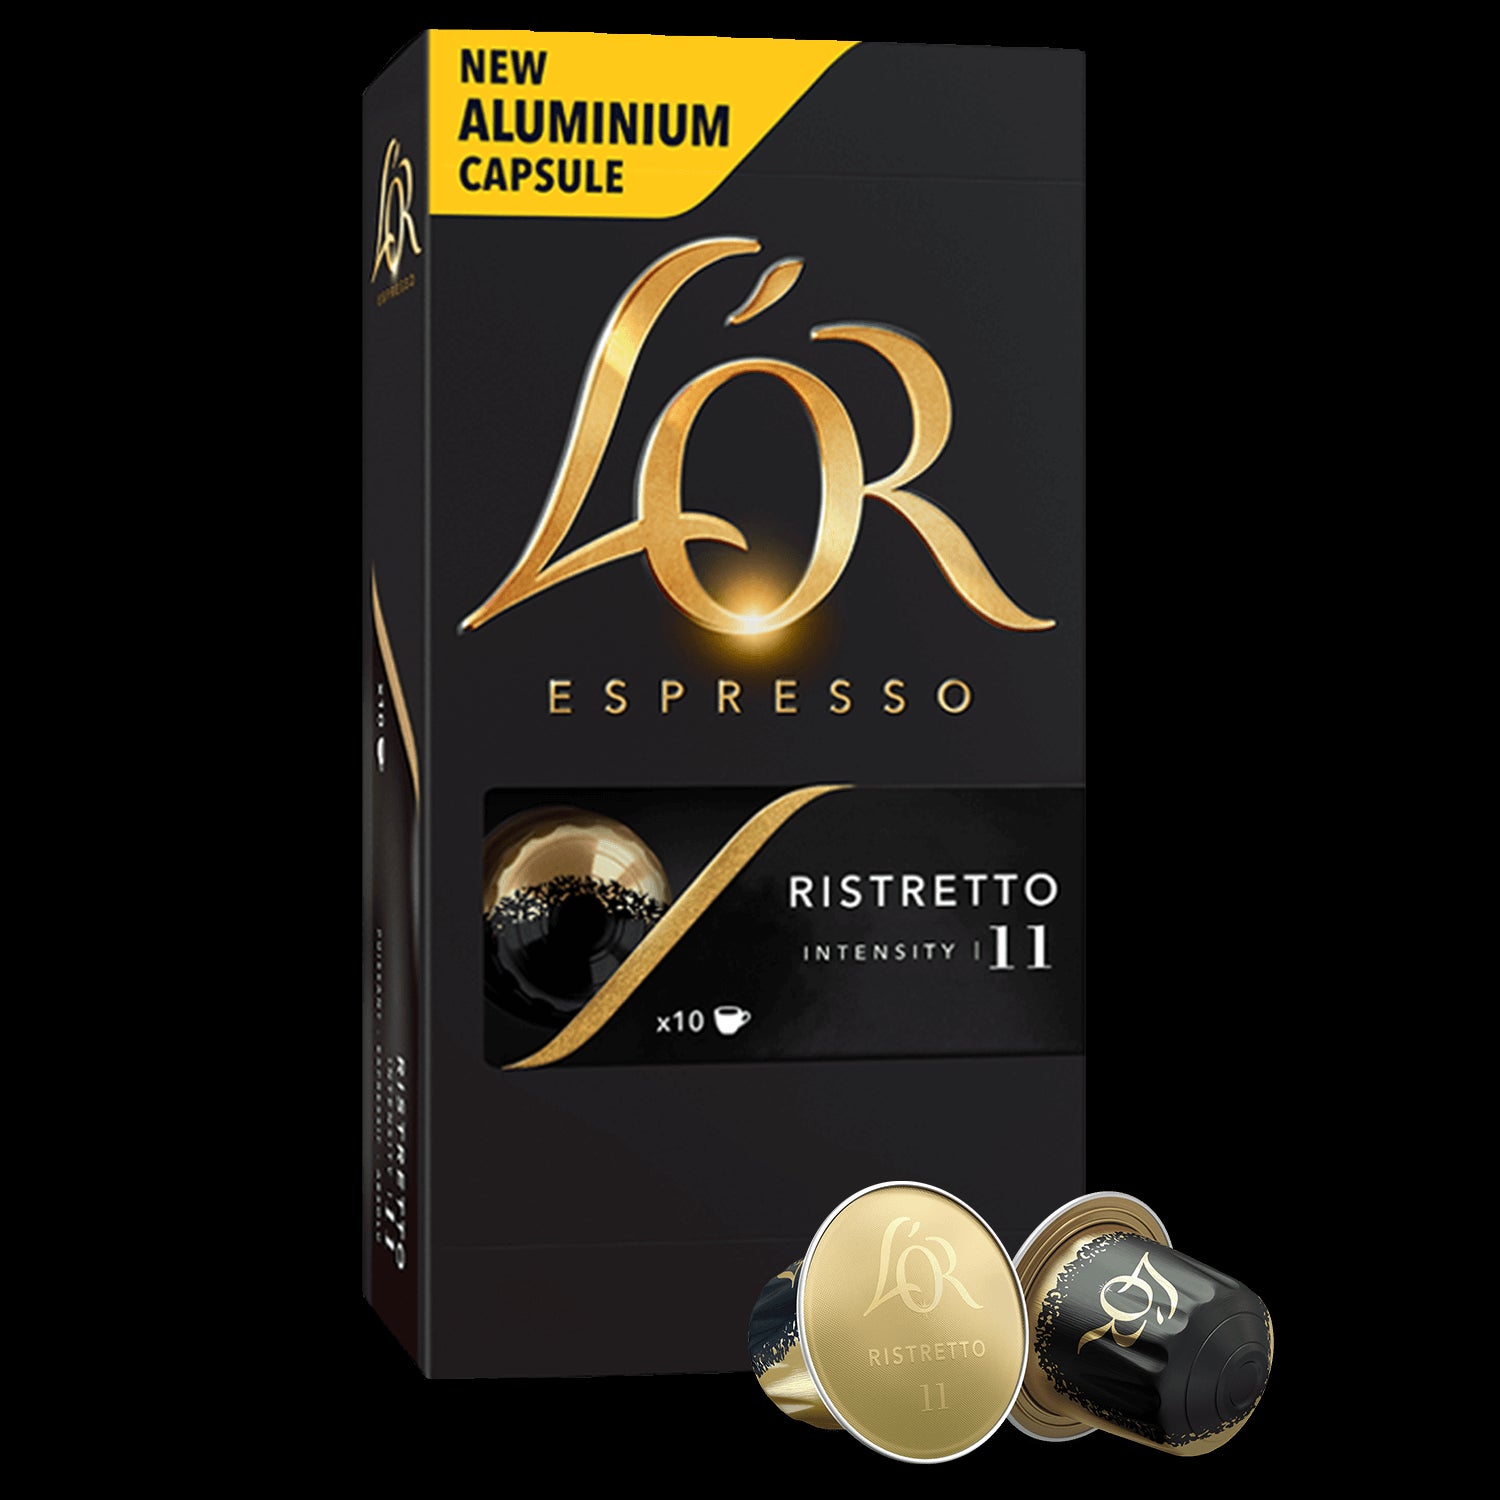 L'OR Espresso Ristretto Intensity 11 - Nespresso Aluminium Compatible  Coffee 10 Capsules